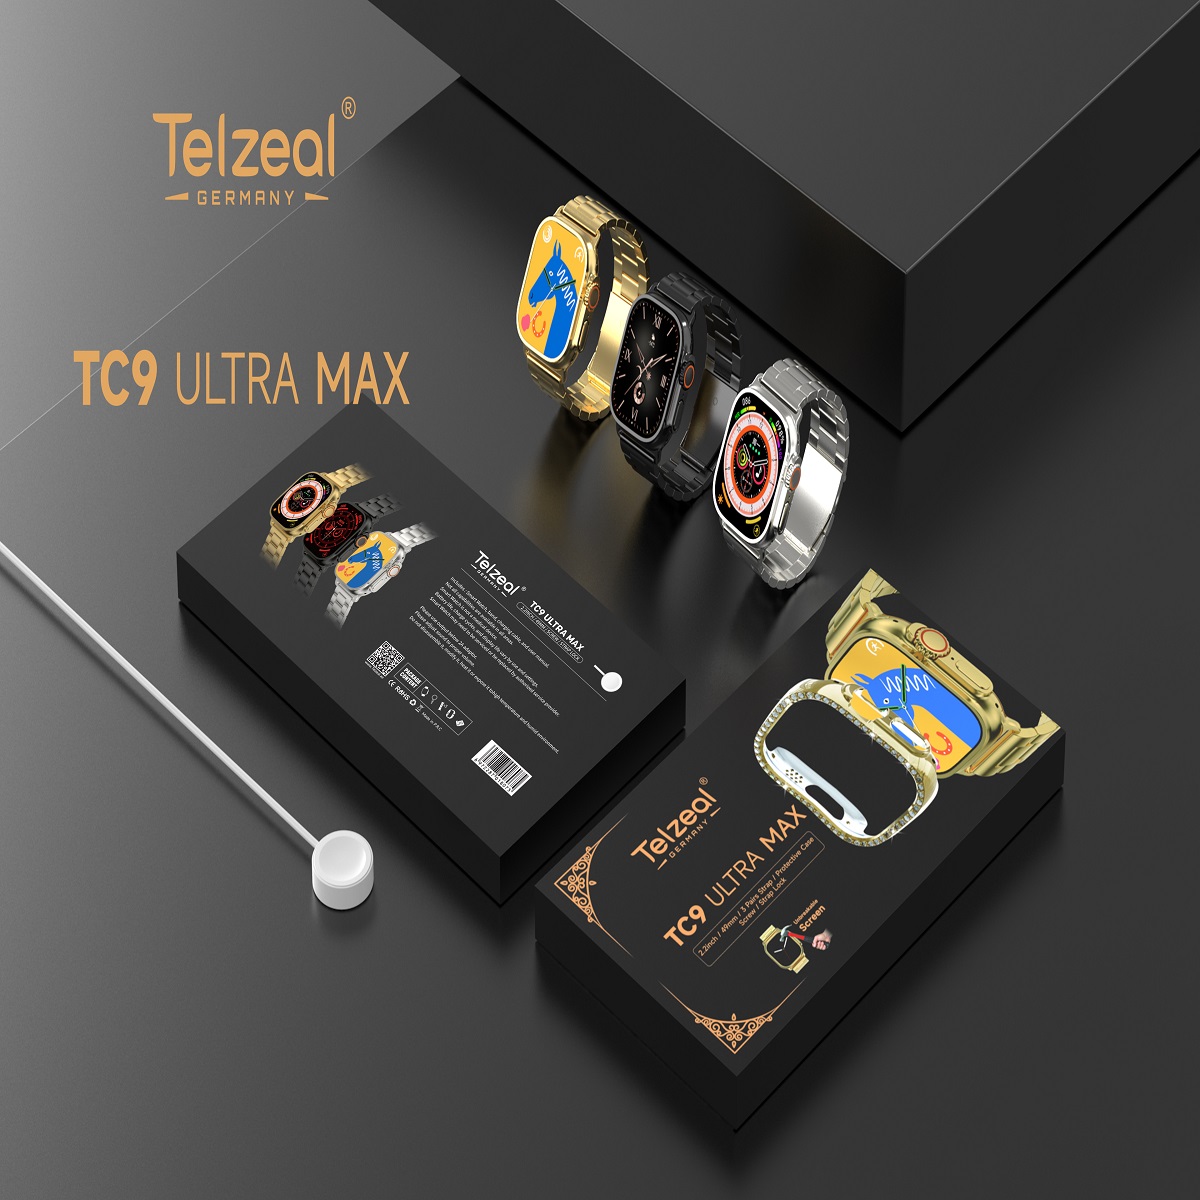 اسمارت واچ  تلزیل مدل TC9 ultra max